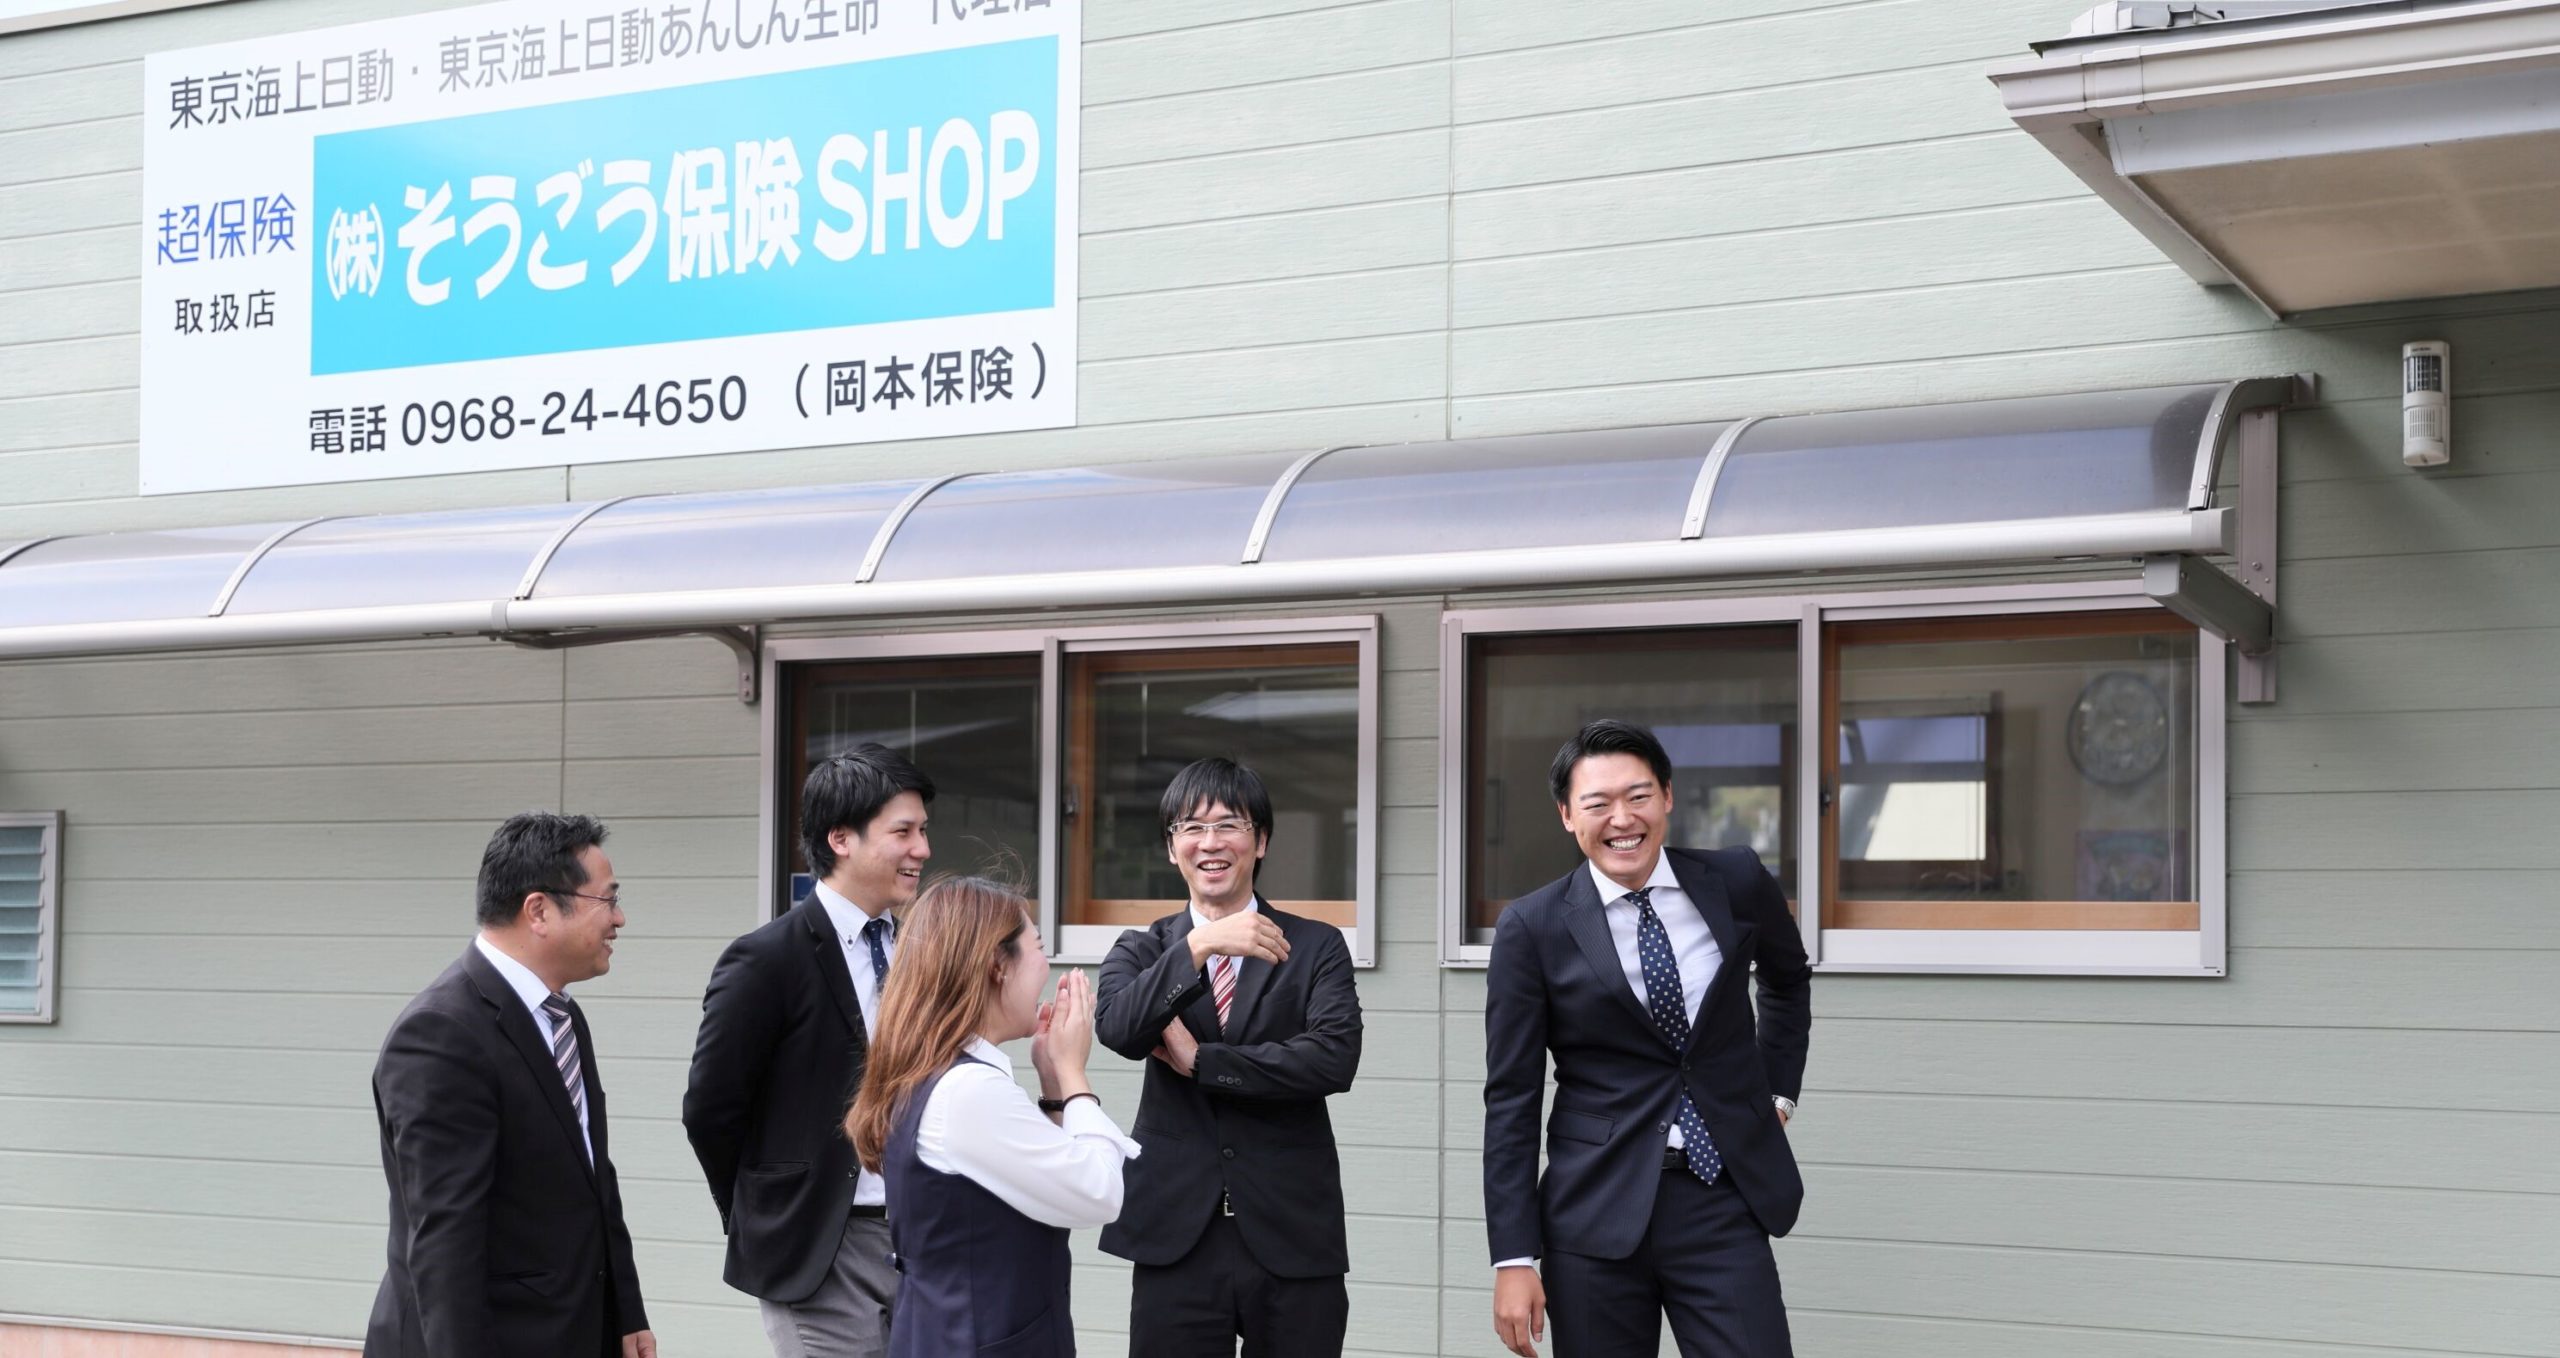 菊池 健太 Ip 研修生 卒業しました 株式会社そうごう保険shop